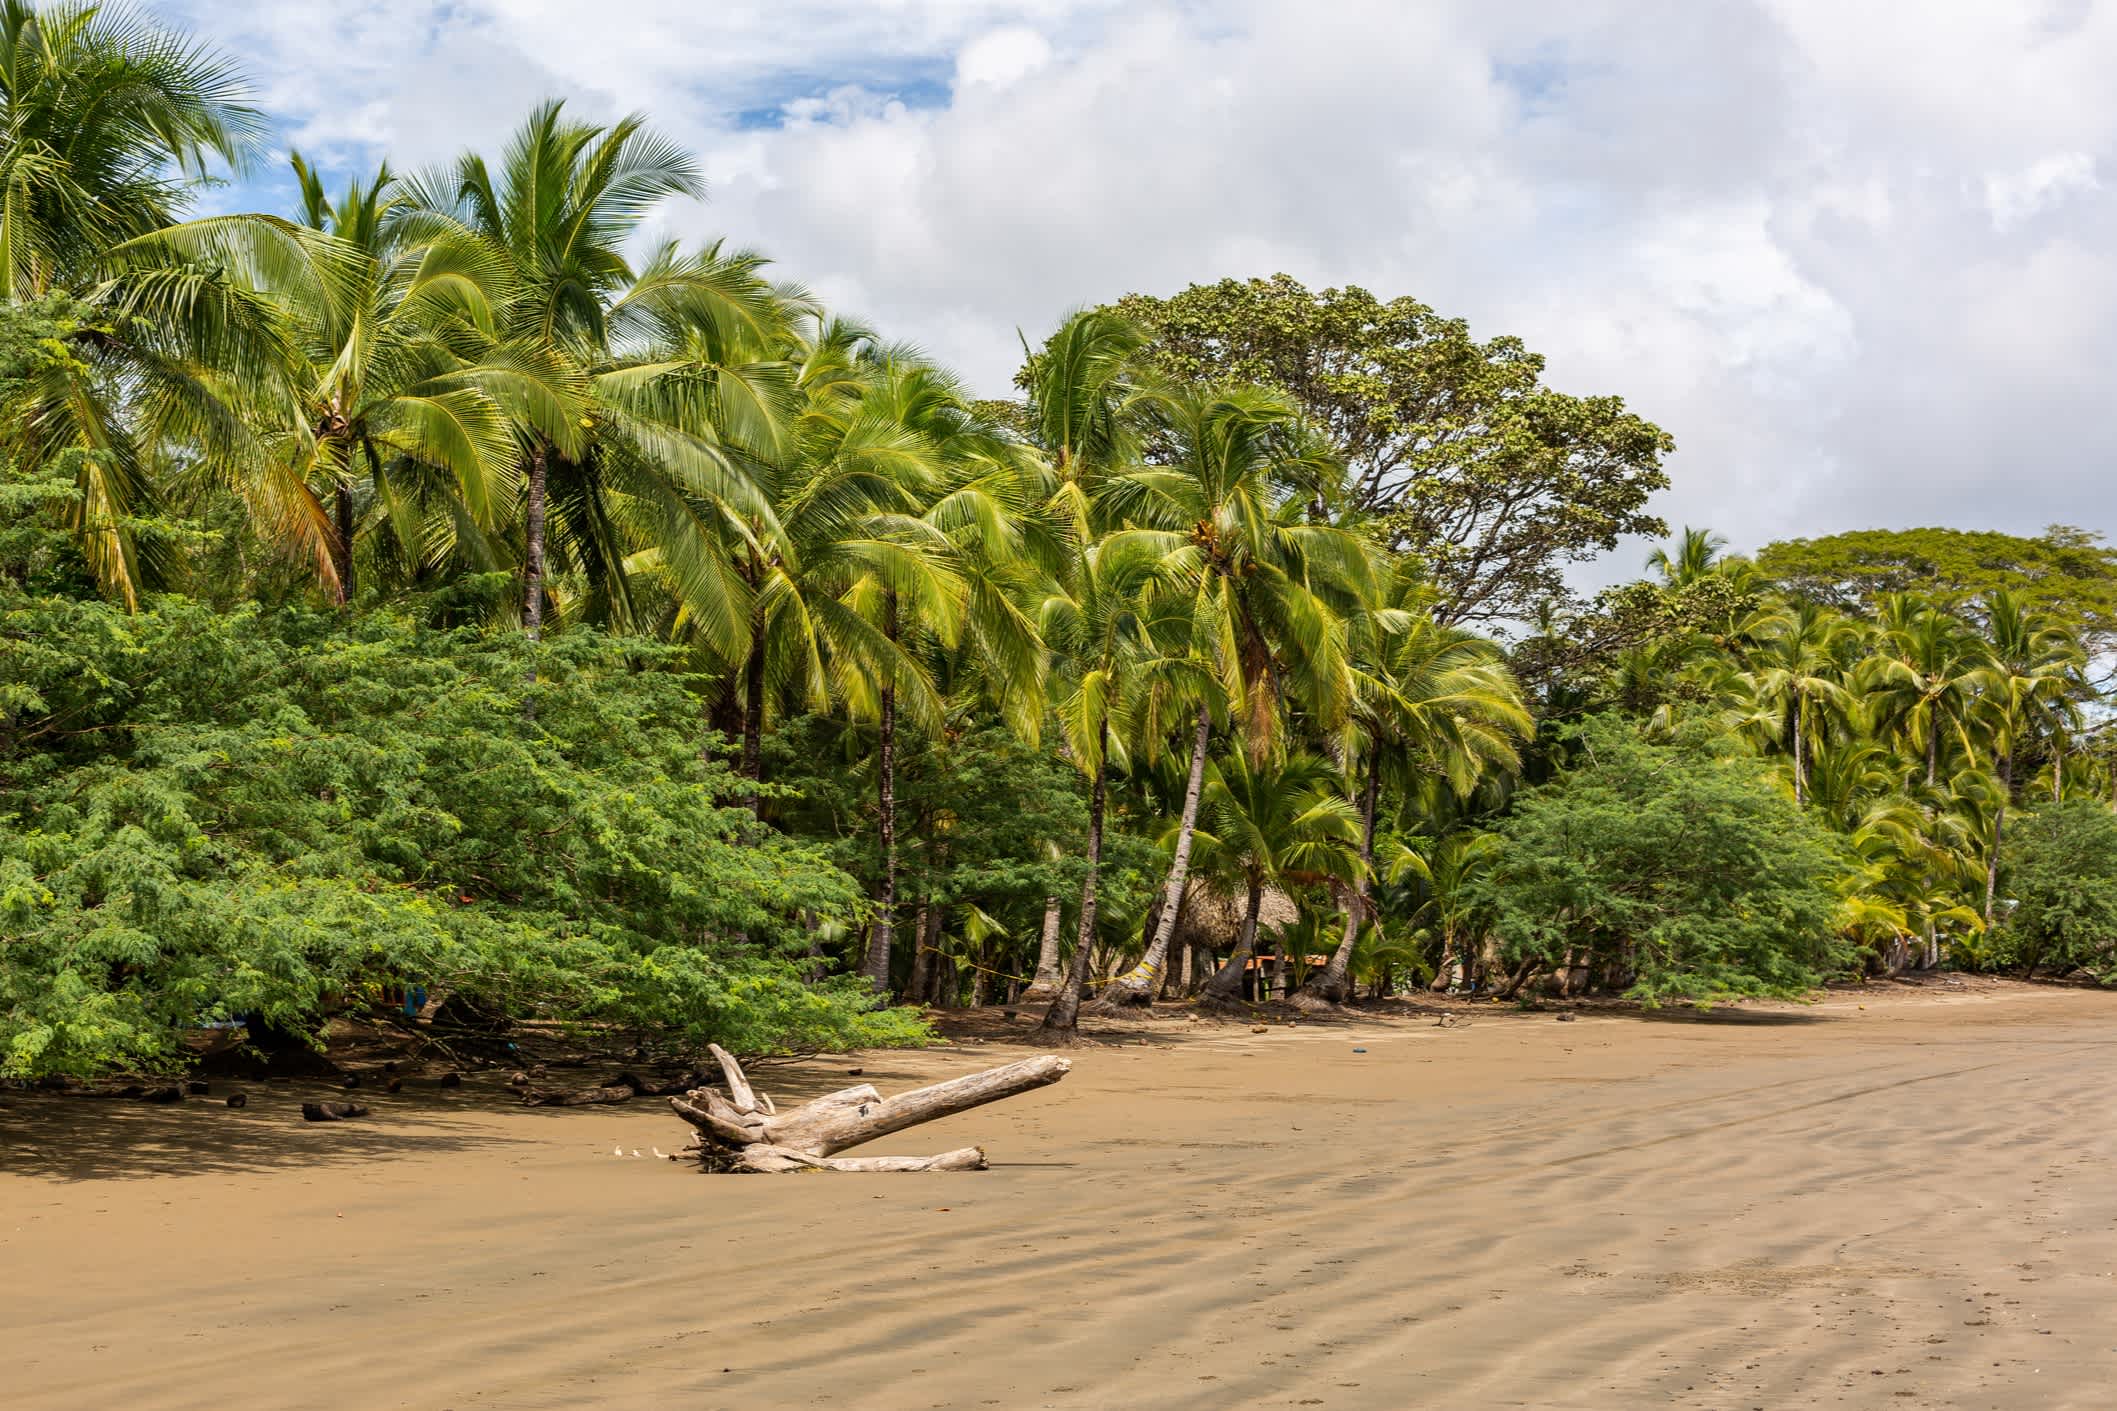 Wunderschöne Landschaft eines Strandes voller verschiedener Arten von grünen Pflanzen in Santa Catalina, Panama
